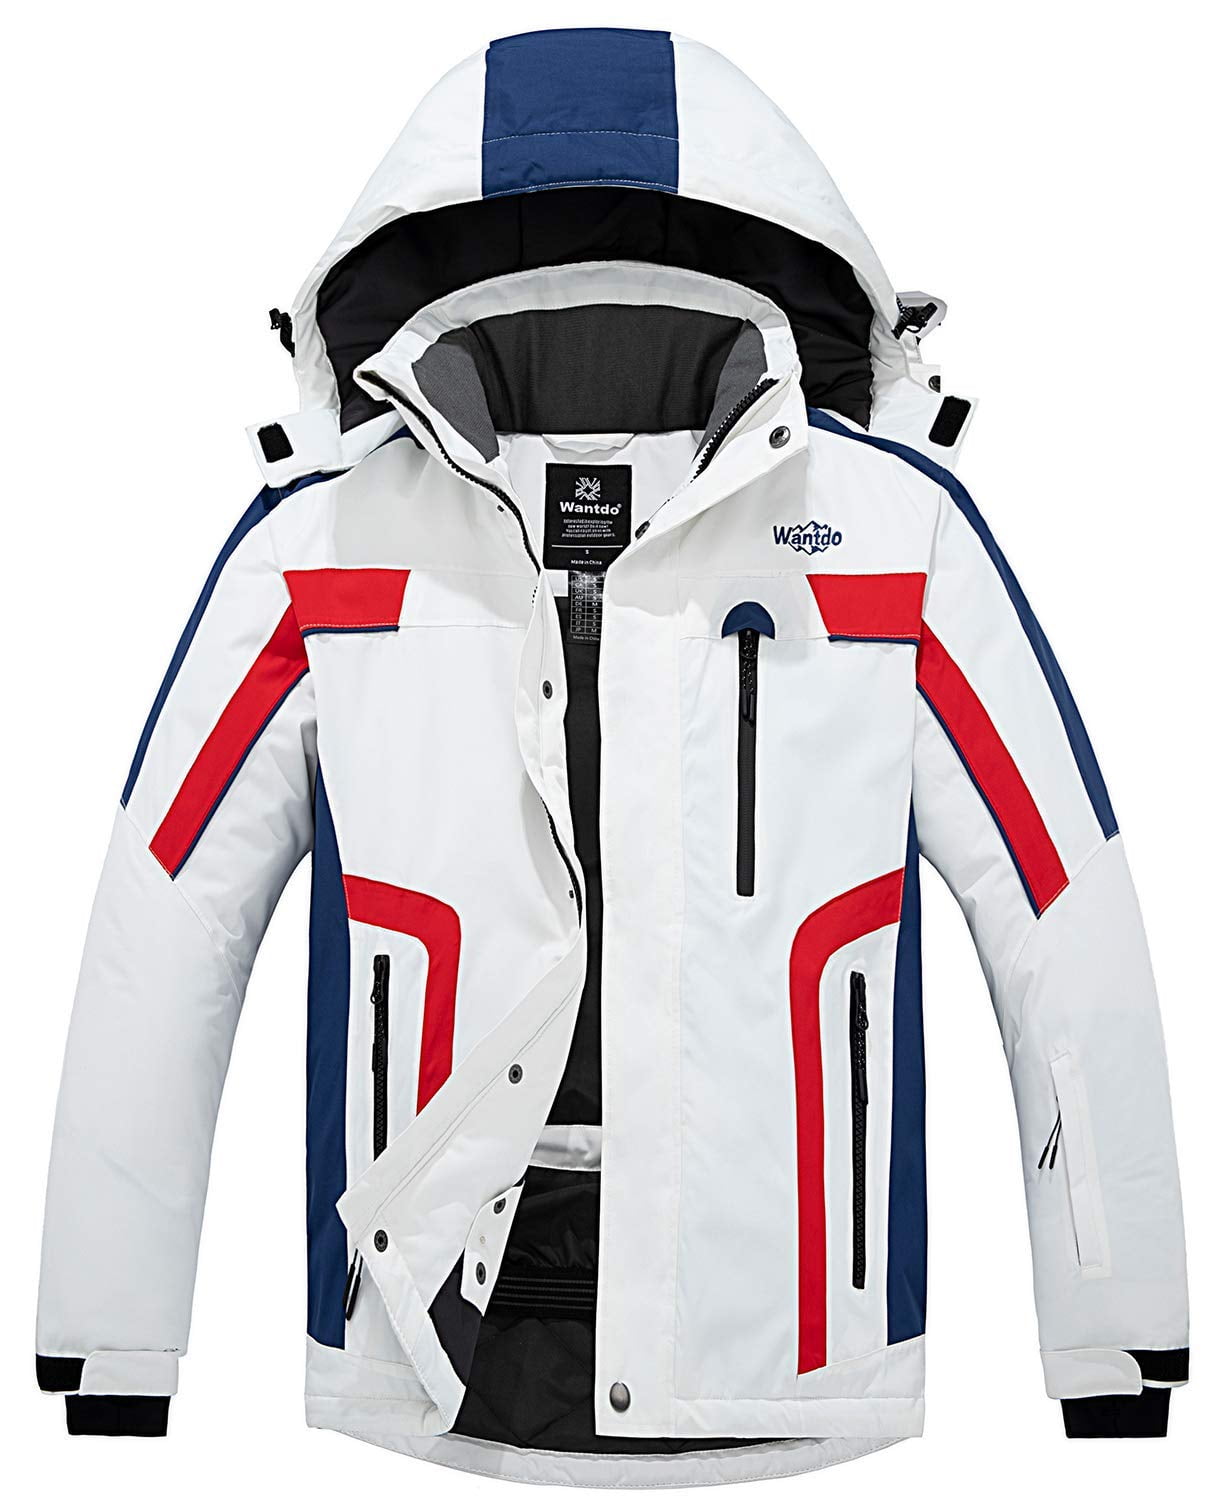 Wantdo Men's Ski Jacket Warm Winter Waterproof Parka Windproof Coat Navy  Size L - Walmart.com